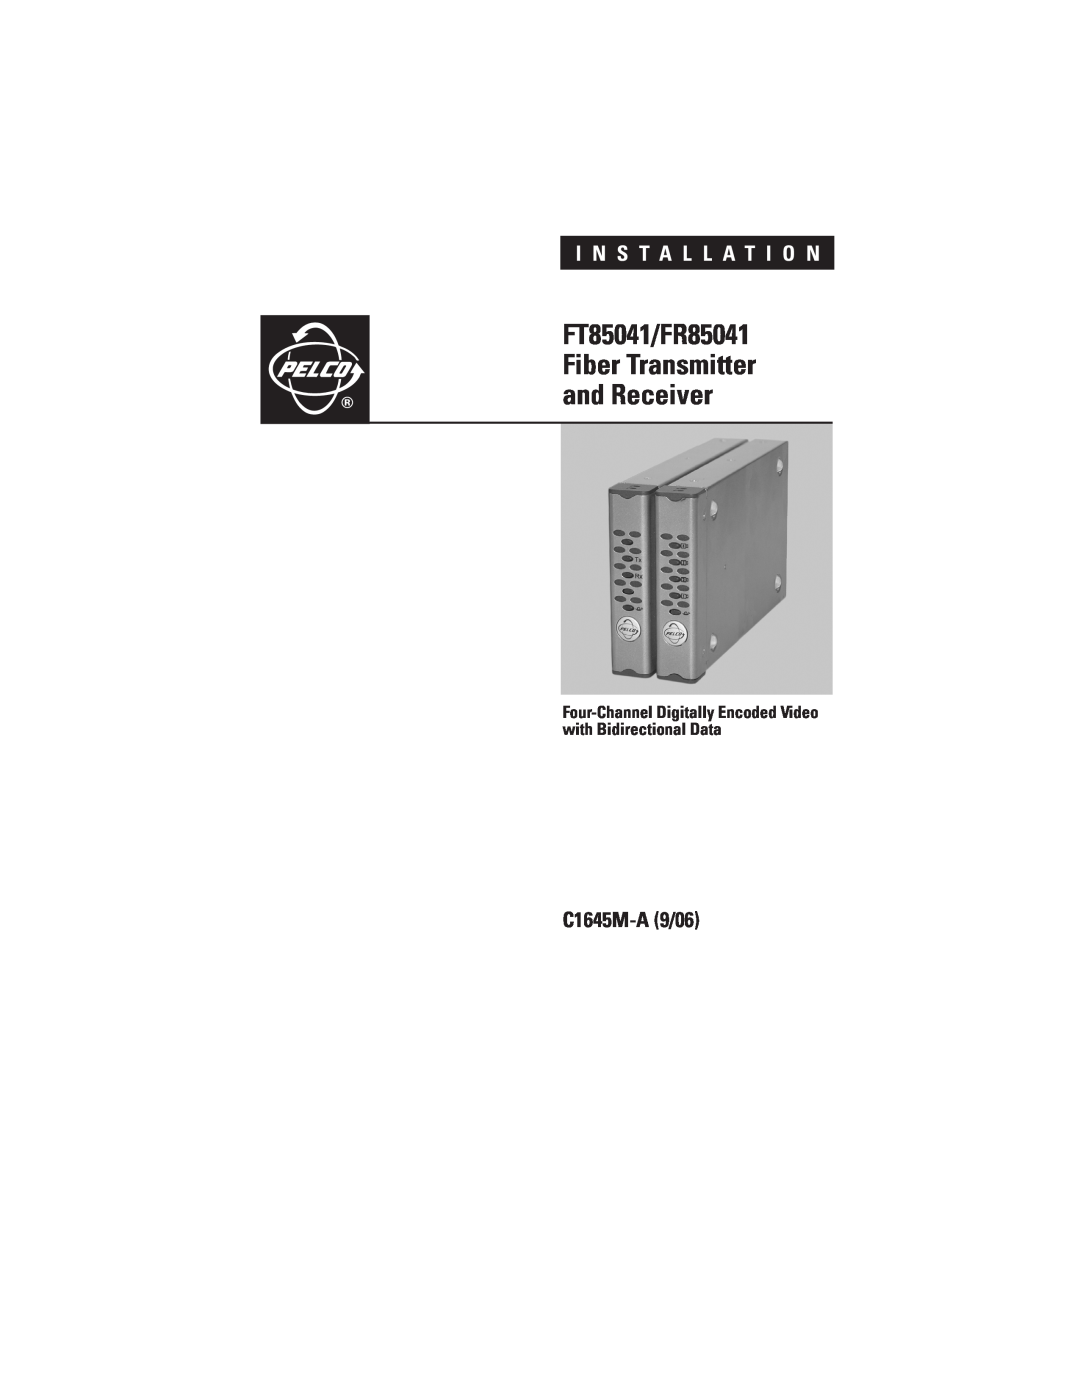 Pelco installation manual FT85041/FR85041, Fiber Transmitter, and Receiver, C1645M-A9/06, I N S T A L L A T I O N 